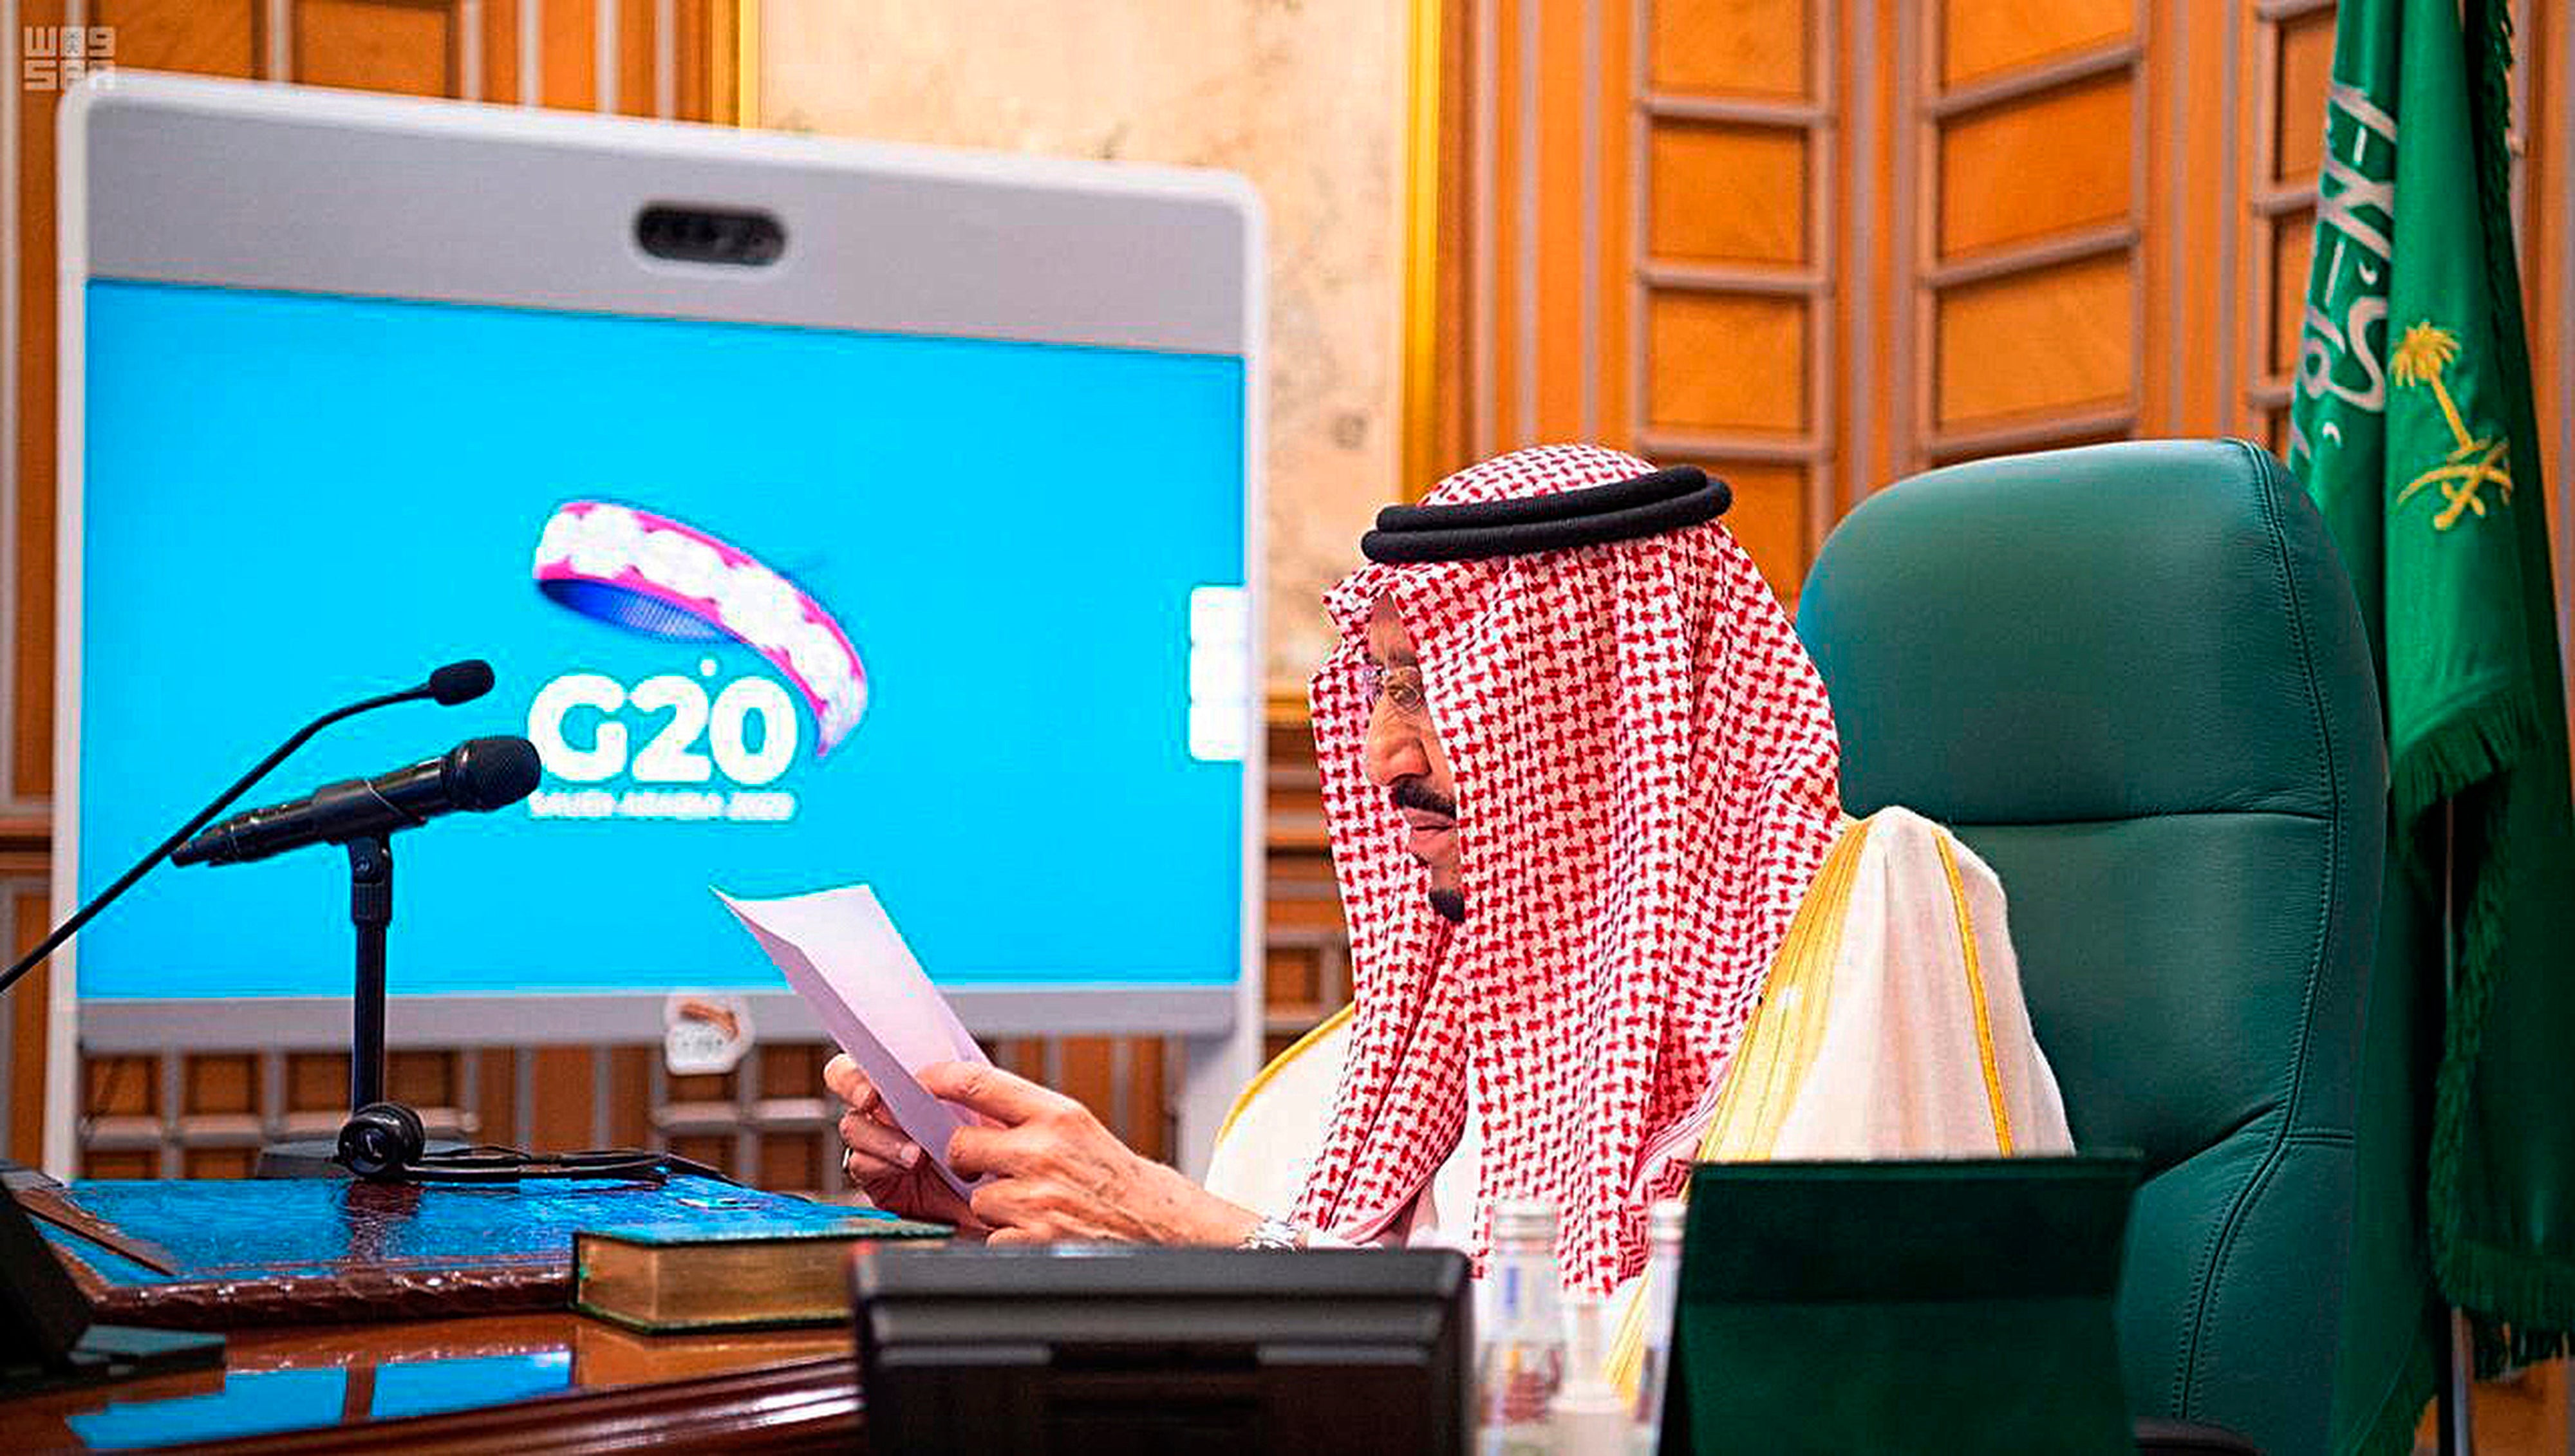 Foto tomada el 26 de marzo del 2020 del rey saudí hablando para una reunión del G20 desde su despacho en Riad. Foto cortesía de la Saudi Press Agency.